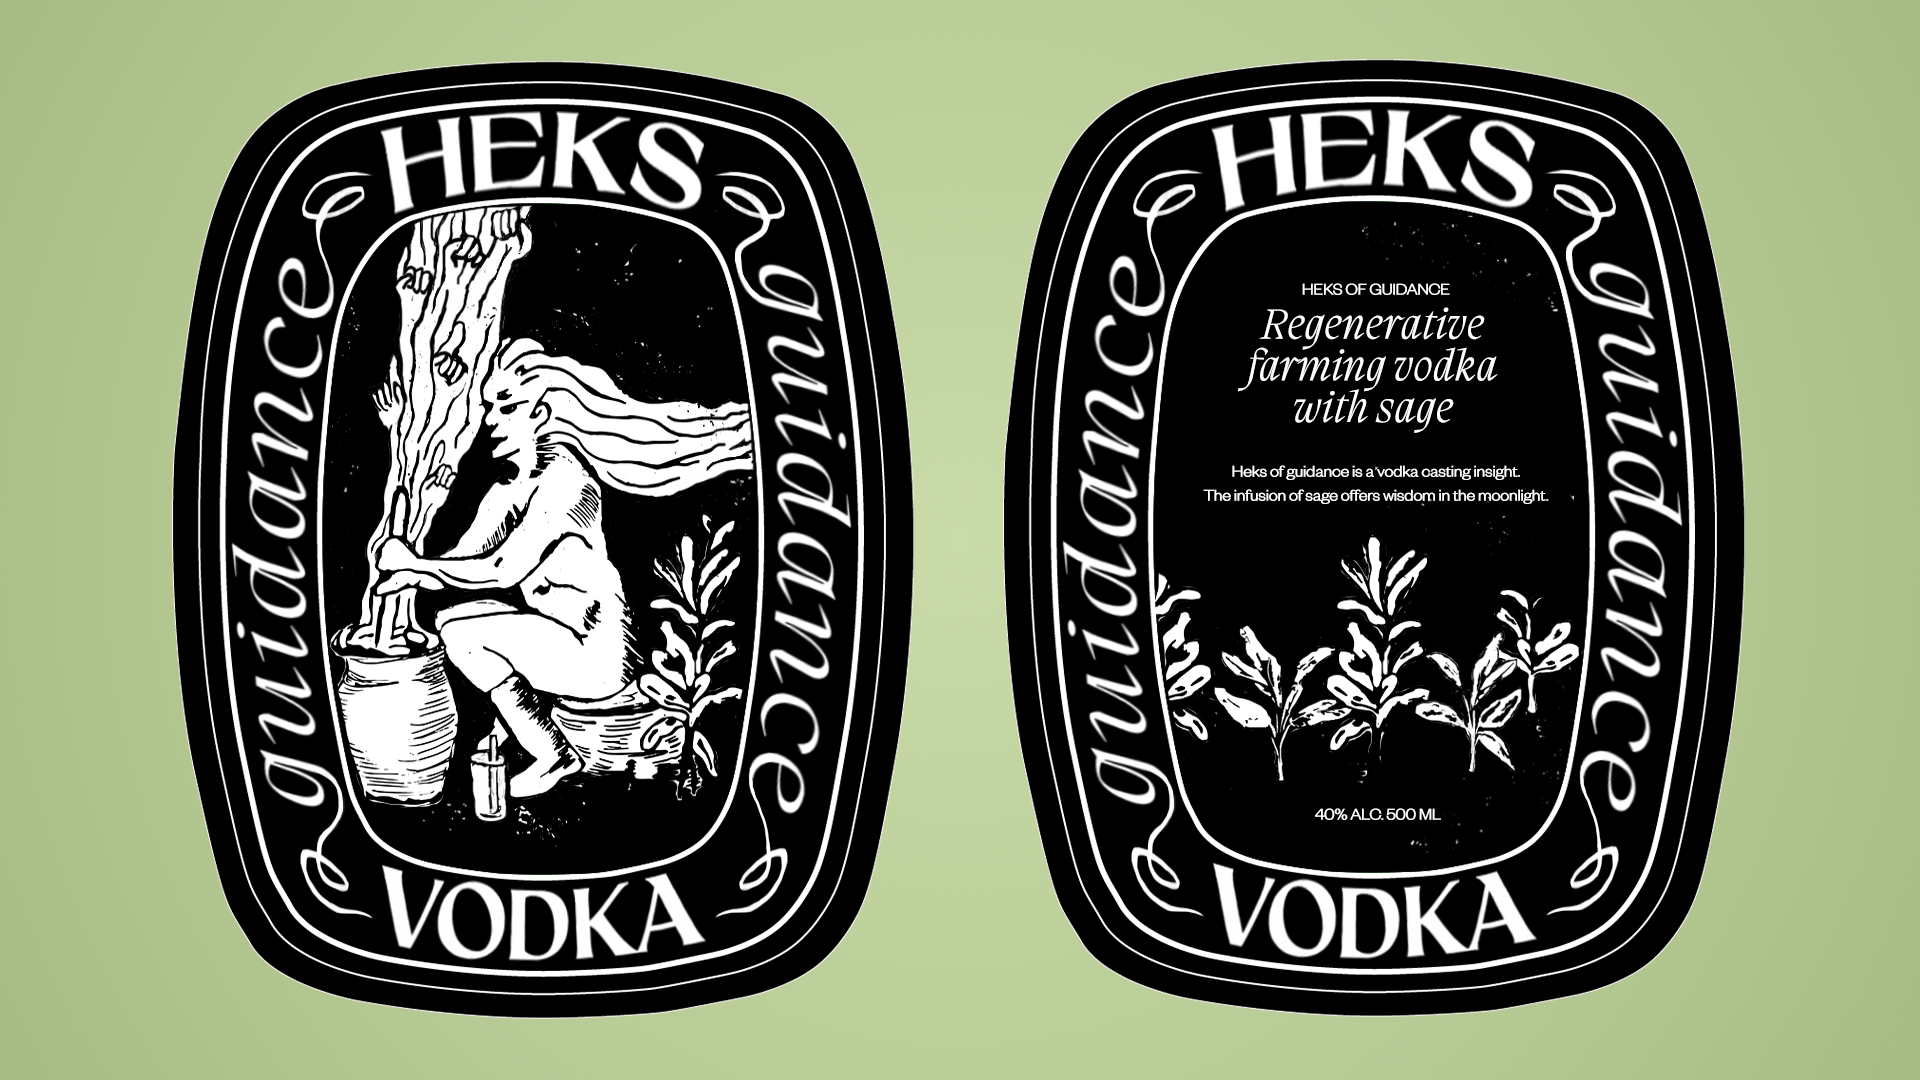 heks vodka guidance